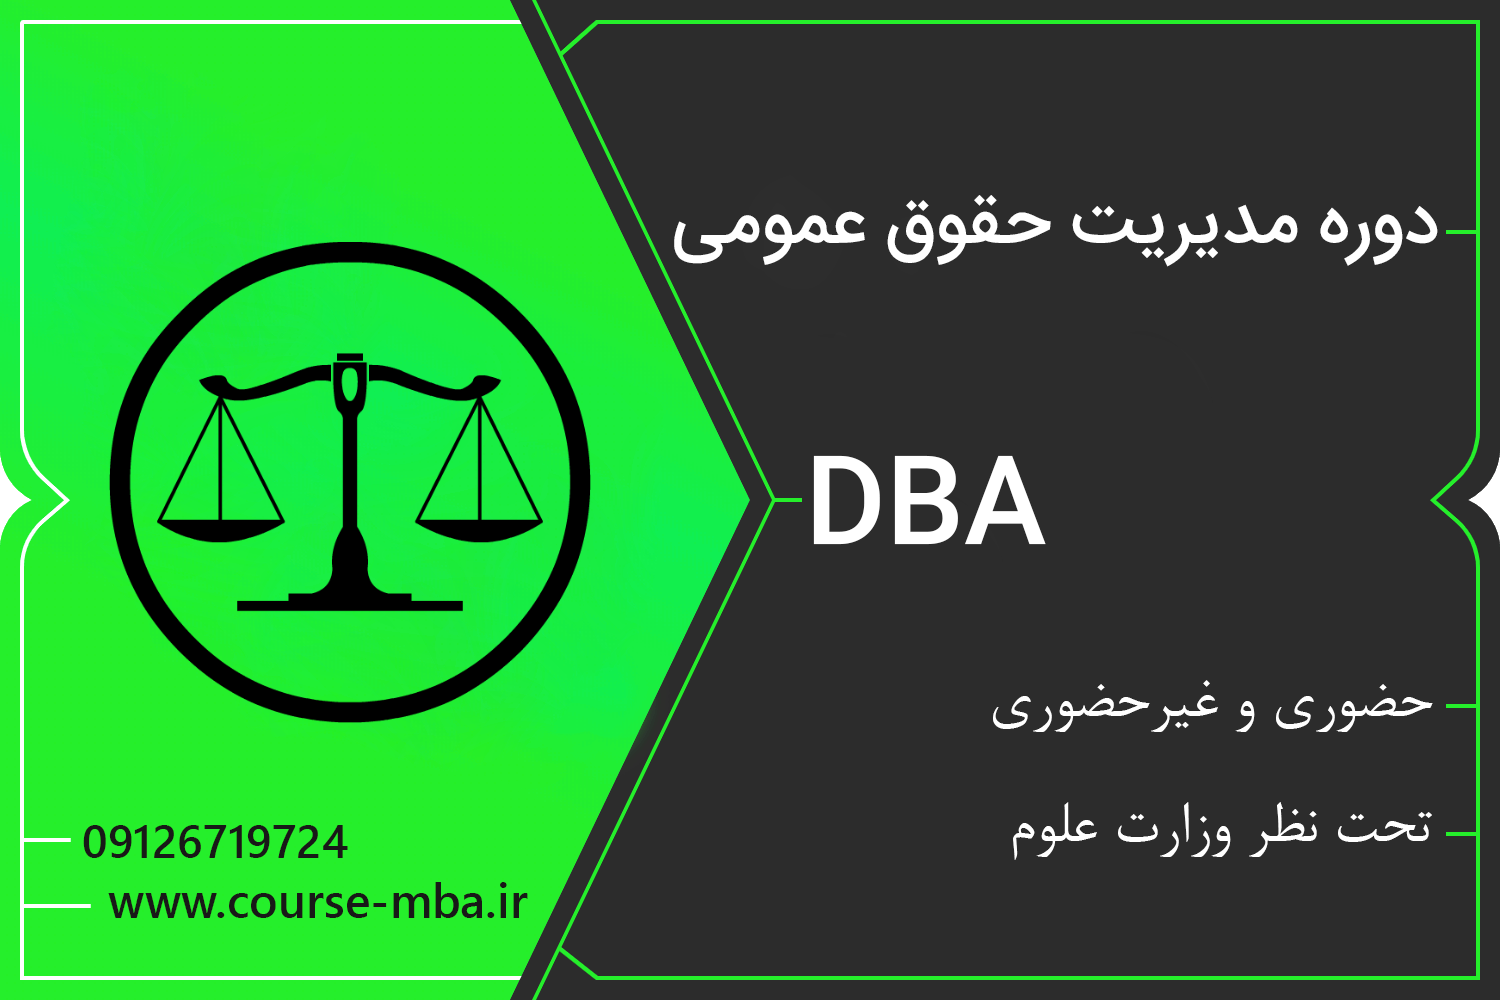 دوره DBA مدیریت حقوق عمومی | مدرک DBA مدیریت حقوق عمومی